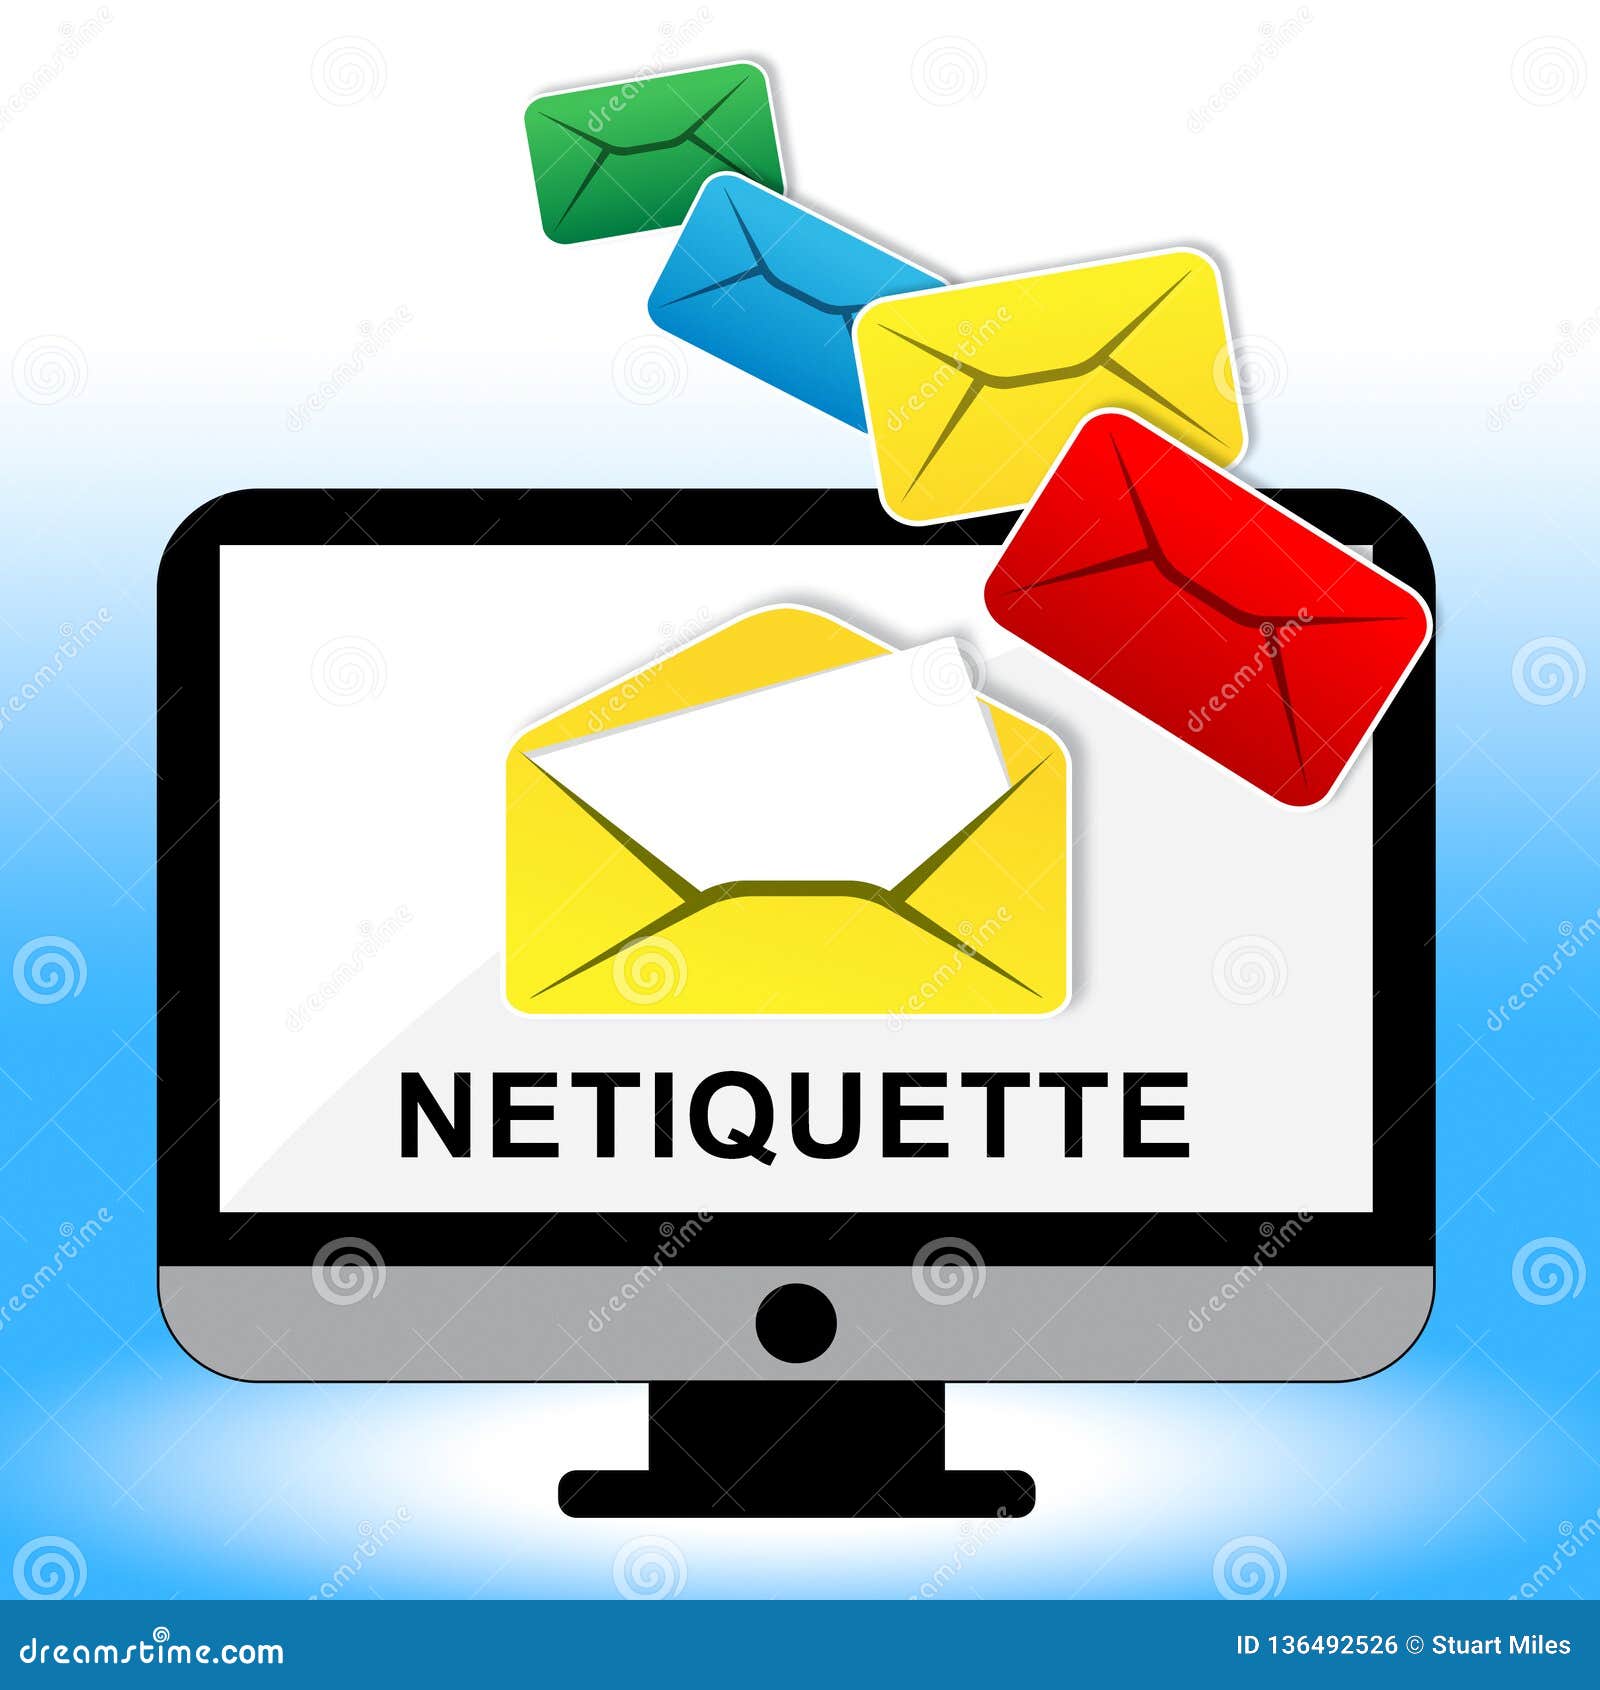 netiquette polite online behavoir or web etiquette - 2d 